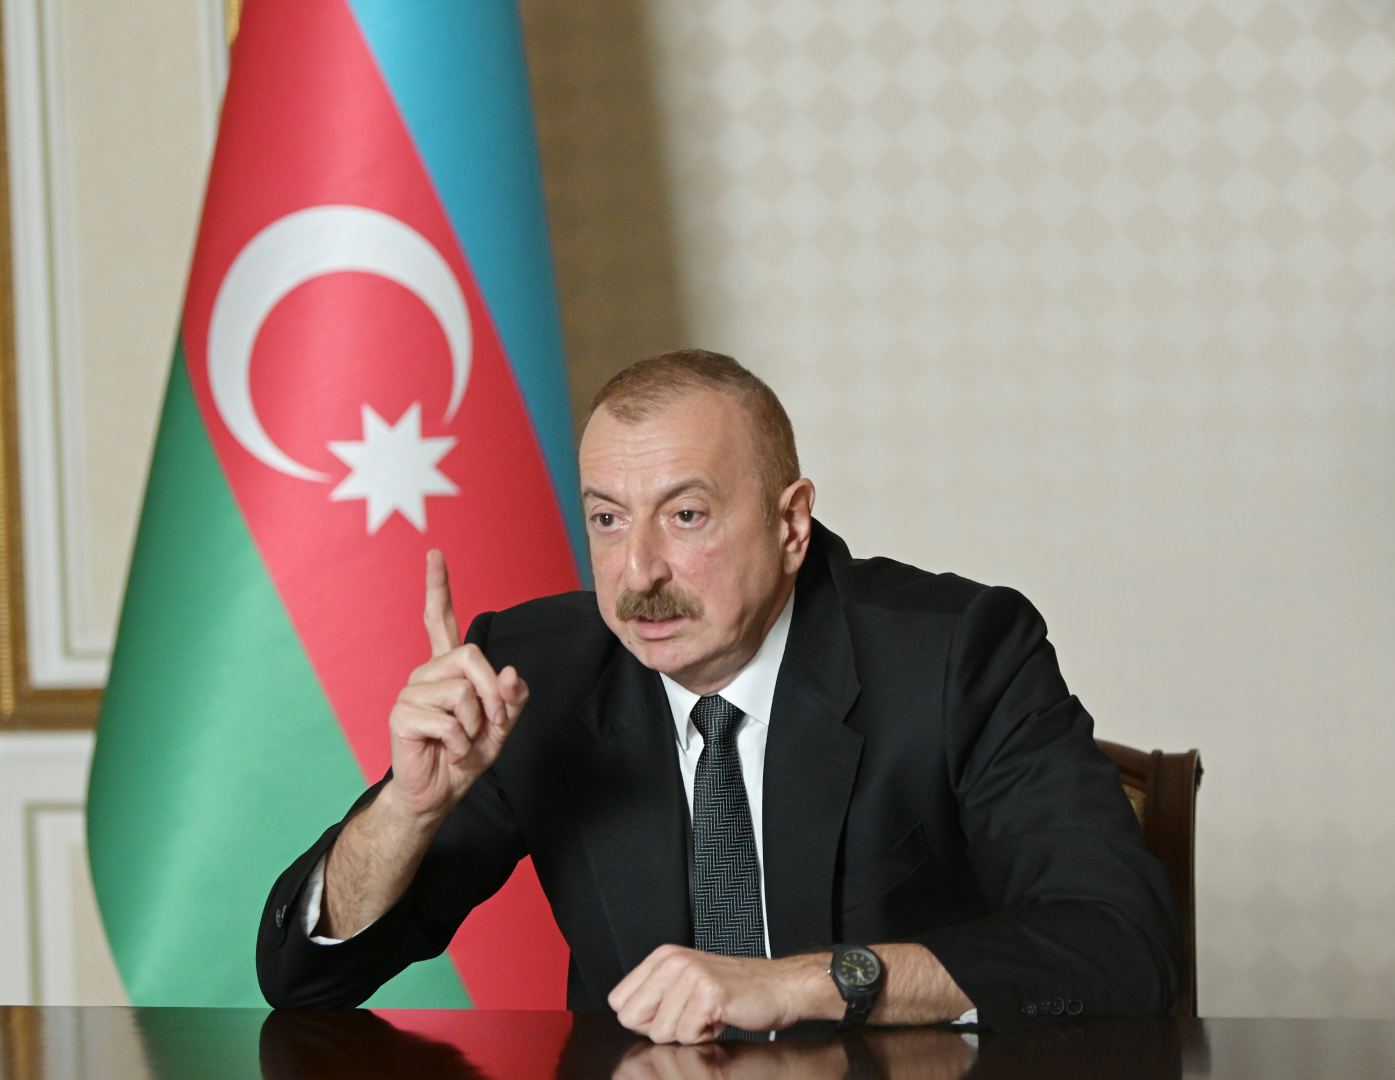 Preziydent Iliham Aliyev: Armeniya nikogda ne mogla y ne smojet oderjati pobedu v otkrytom boy